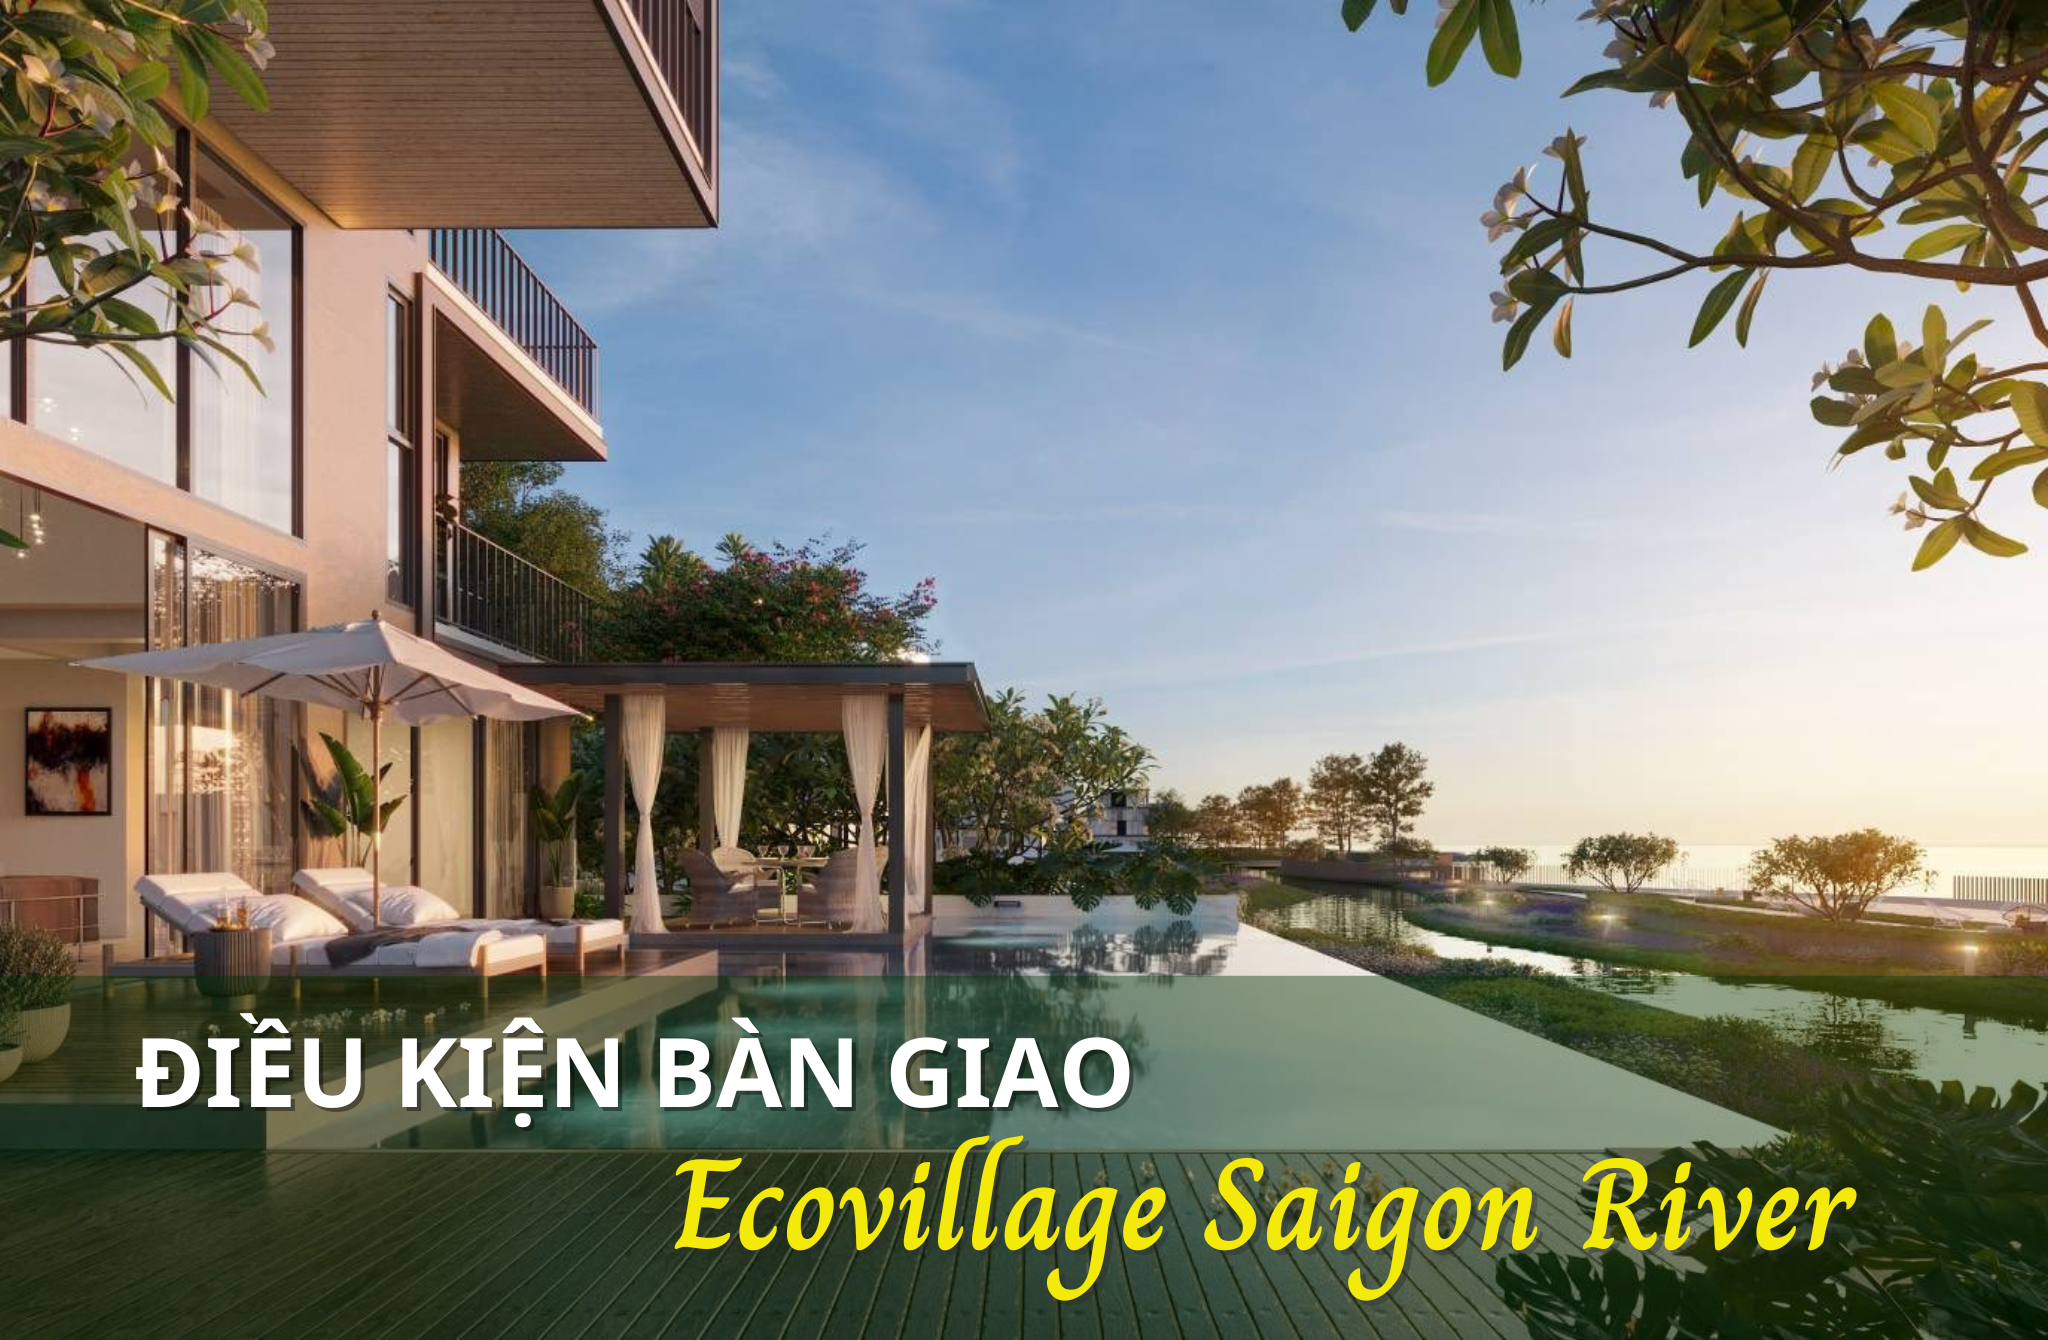 Điều kiện bàn giao nhà tại Ecovillage Saigon River